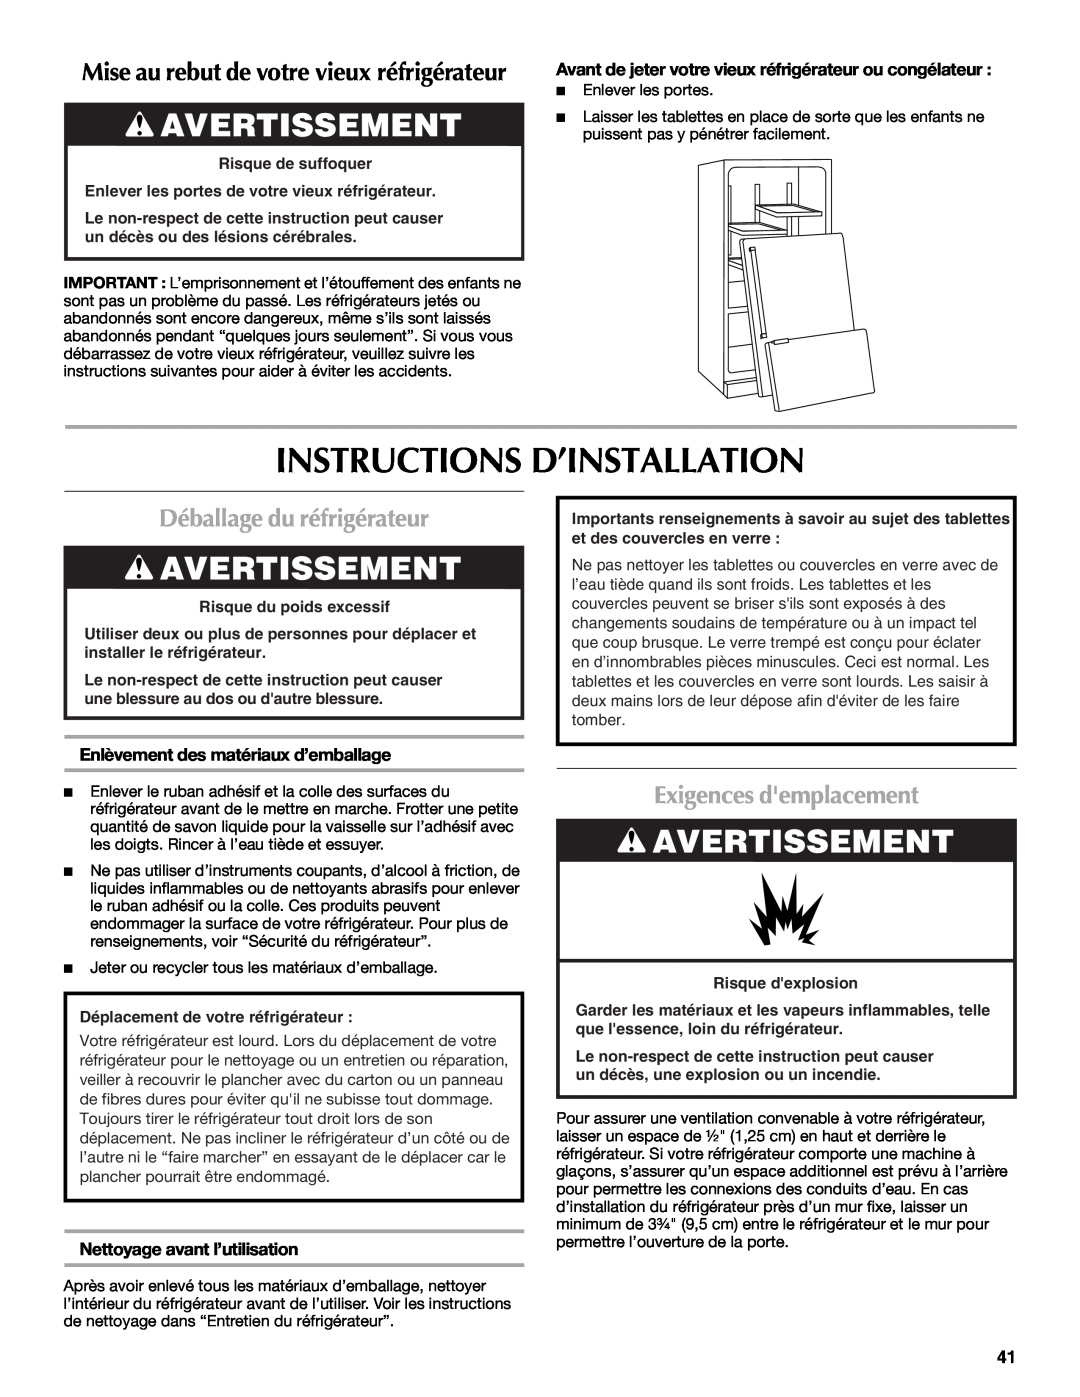 Maytag MFT2771WEM Instructions D’Installation, Avertissement, Déballage du réfrigérateur, Exigences demplacement 